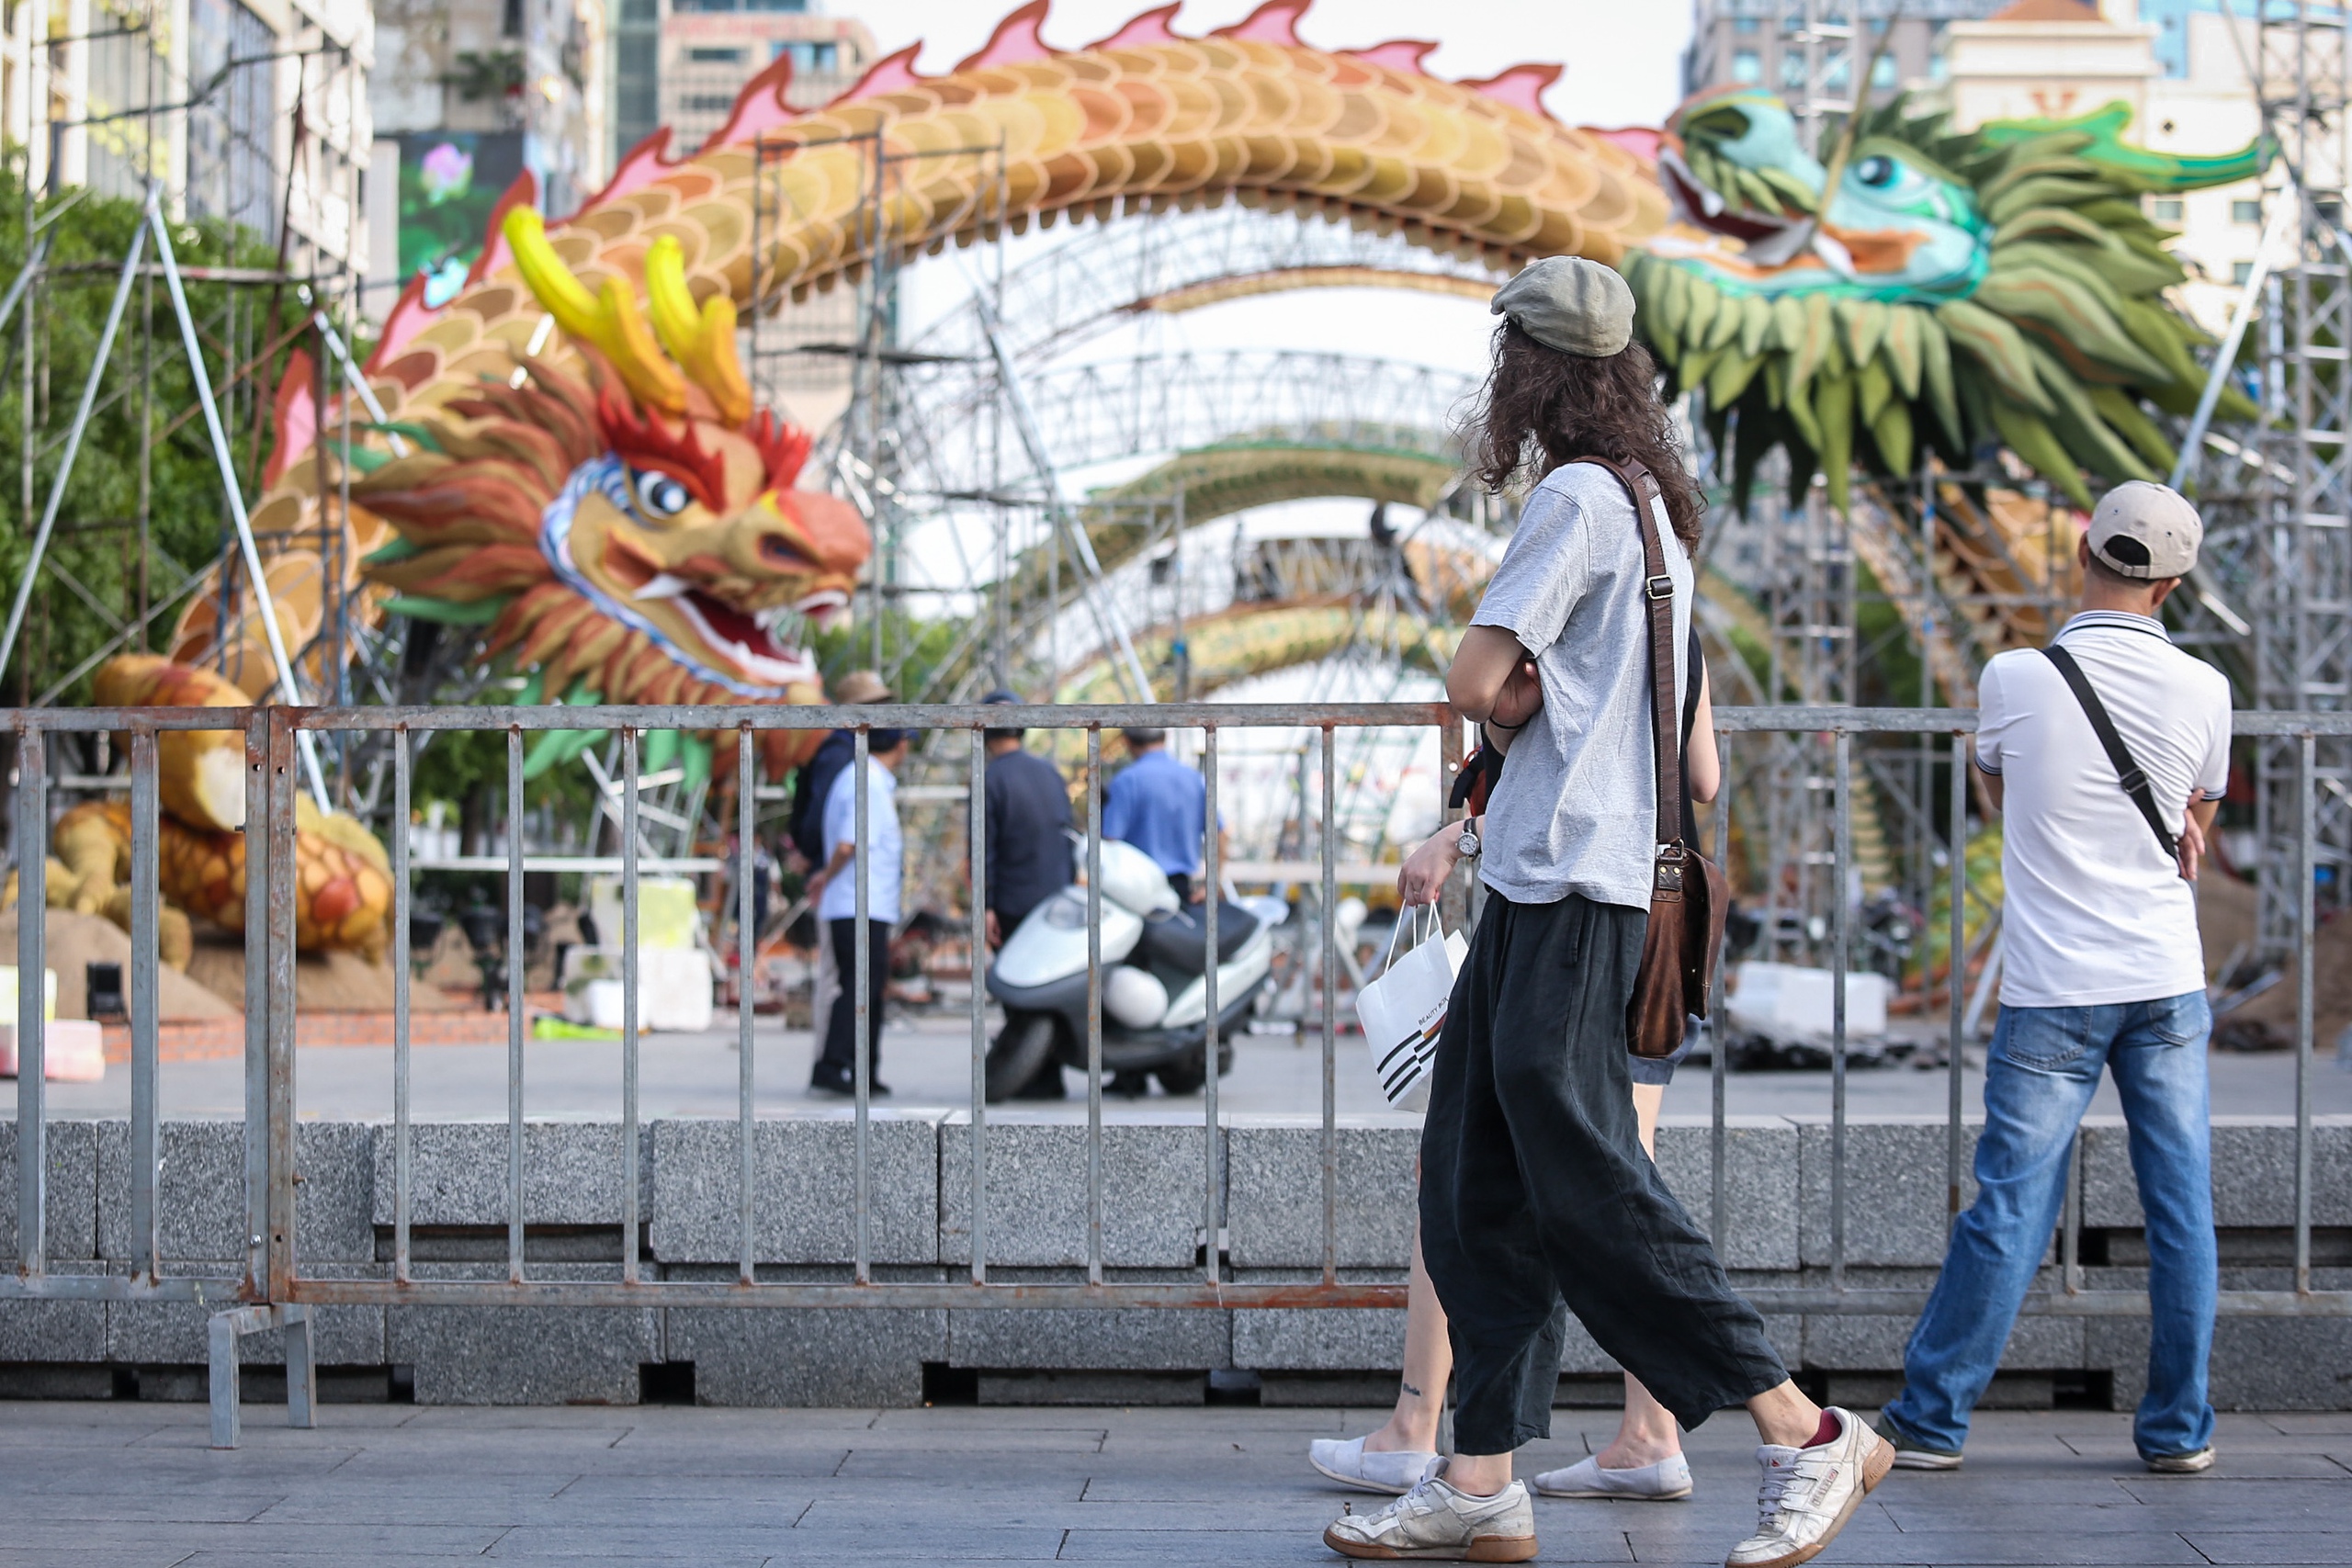 Du khách nước ngoài thích thú với hình ảnh linh vật rồng vừa xuất hiện tại phố đi bộ Nguyễn Huệ